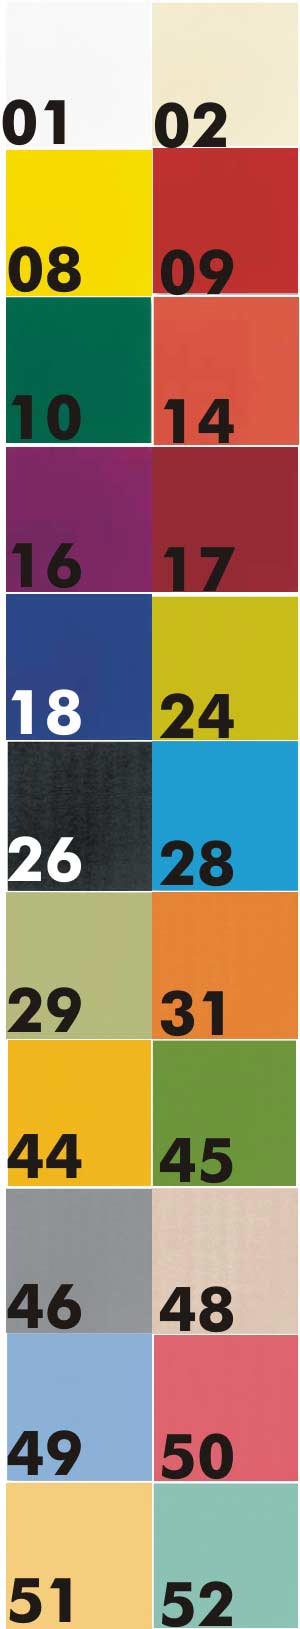 Salg af servietter, duni, 3-lags, 33x33cm, 125 stk - Farver Alt til festen - Aamand Udlejningscenter.